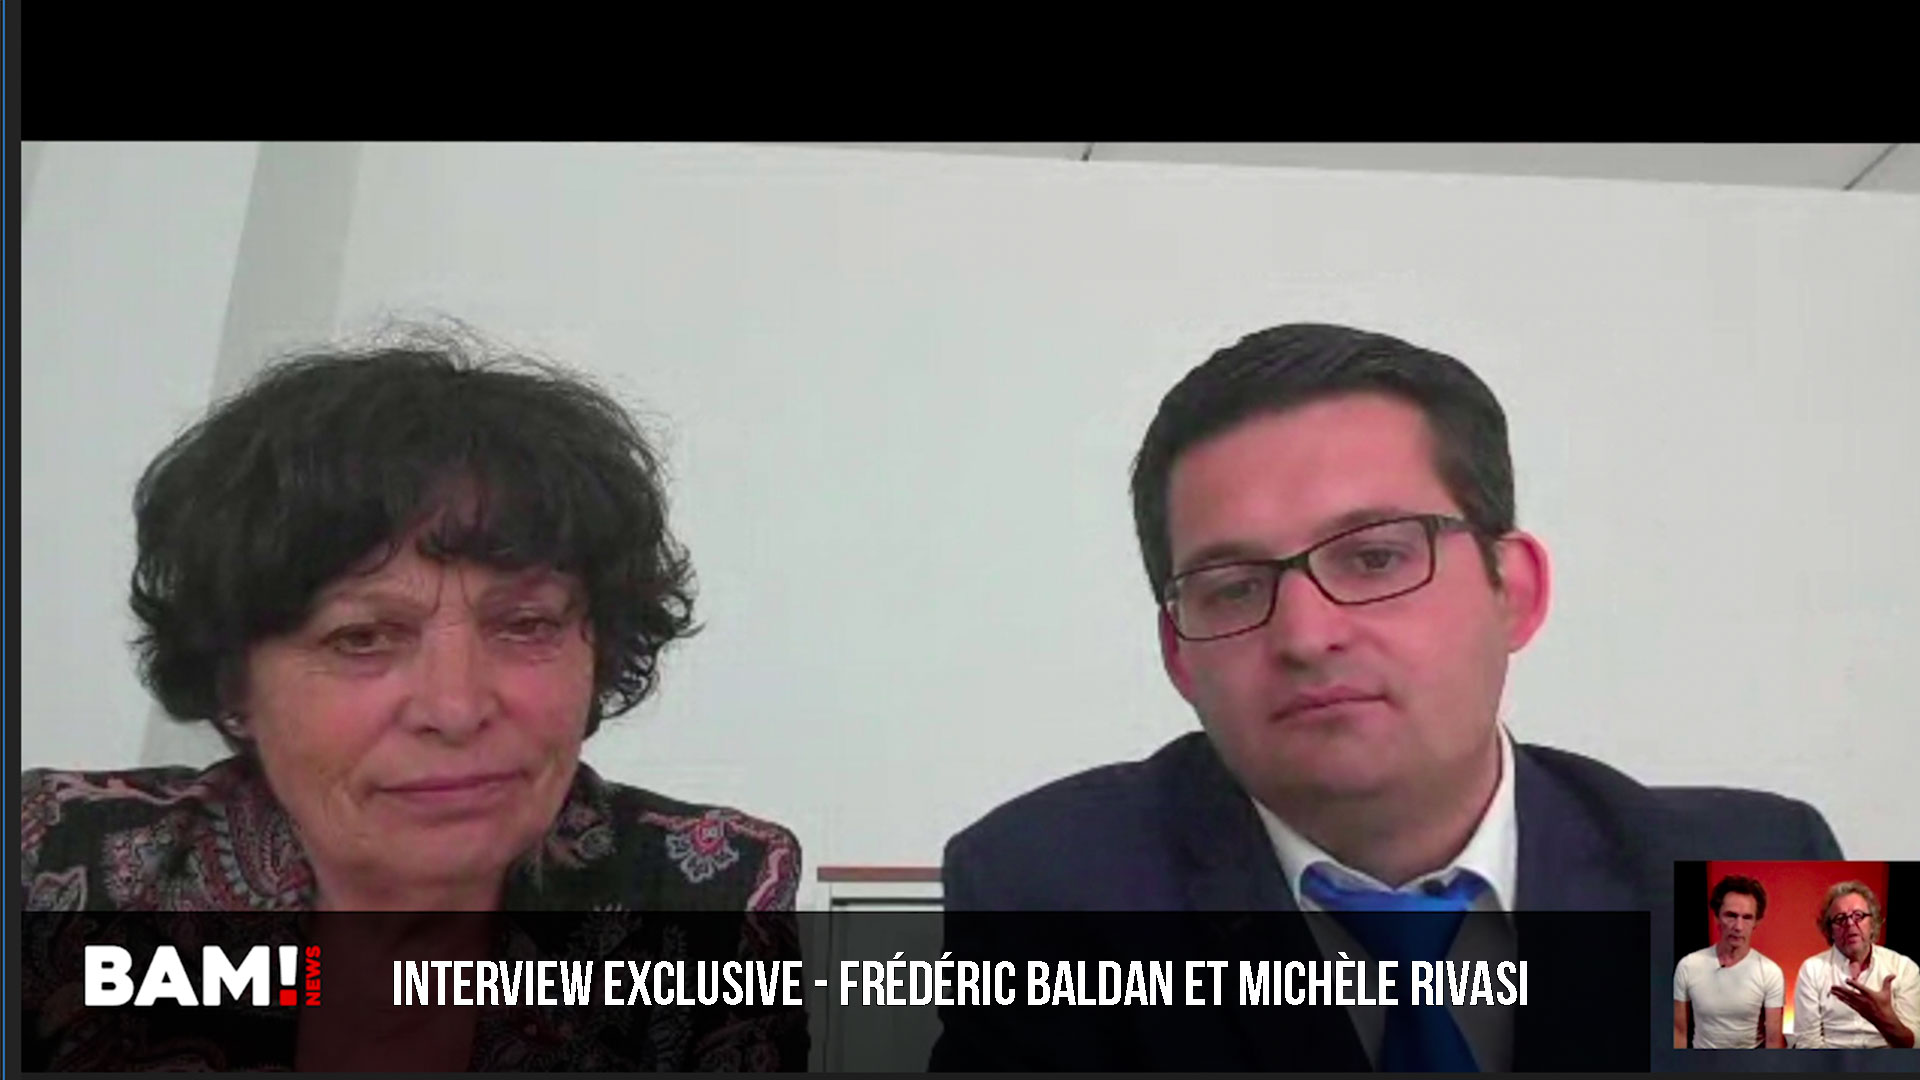 Interview exclusive - Frédéric Baldan veut la mise à pied immédiate de Ursula Von der Leyen!